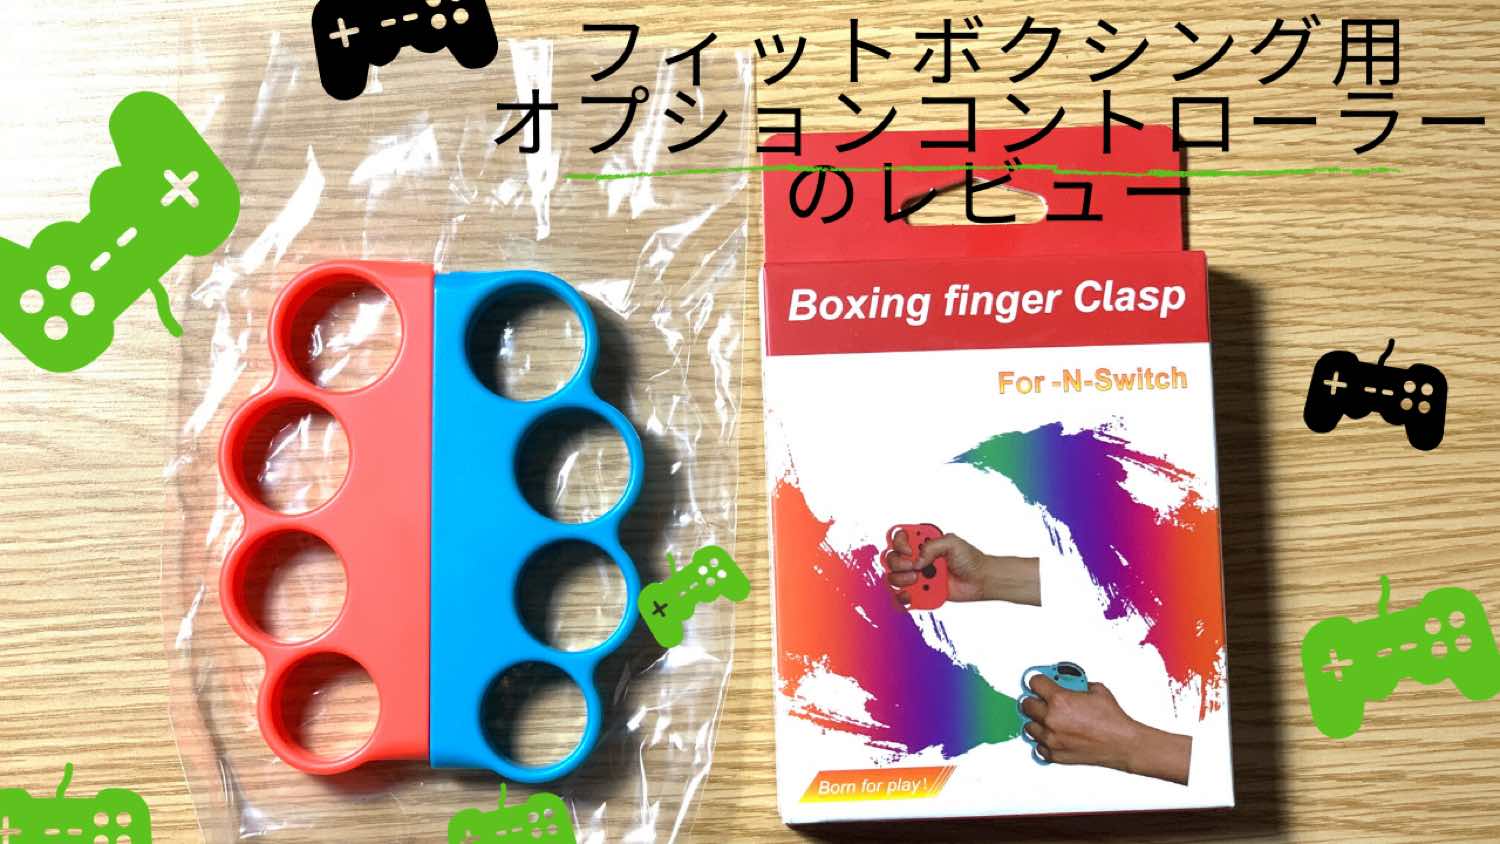 フィットボクシング用コントローラーをGET(Boxing finger Clasp)